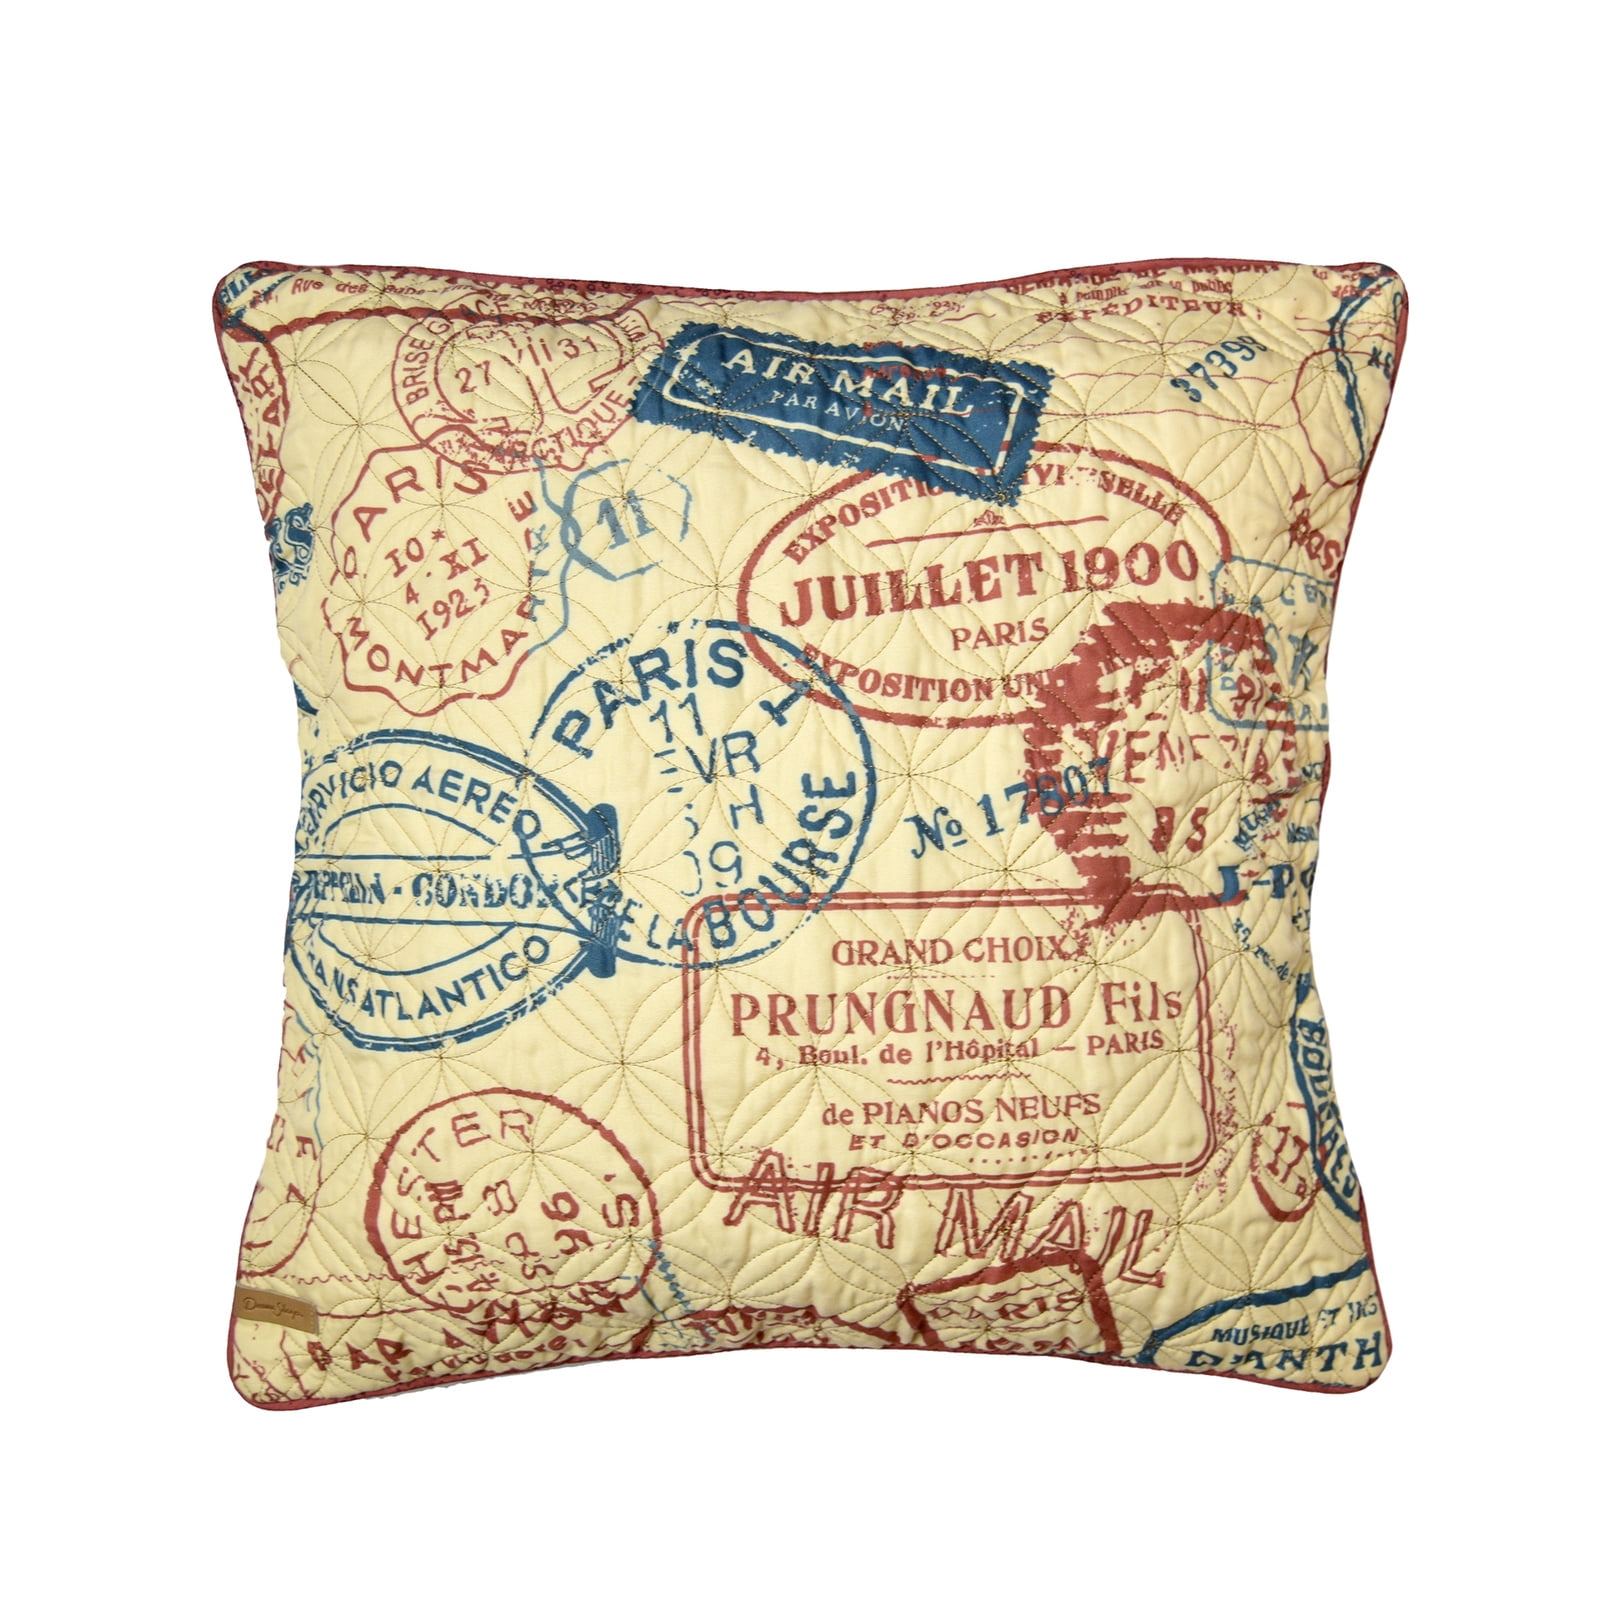 52061 18 X 18 In. Cinnamon Spice Stamp Decorative Pillow, Multi Color